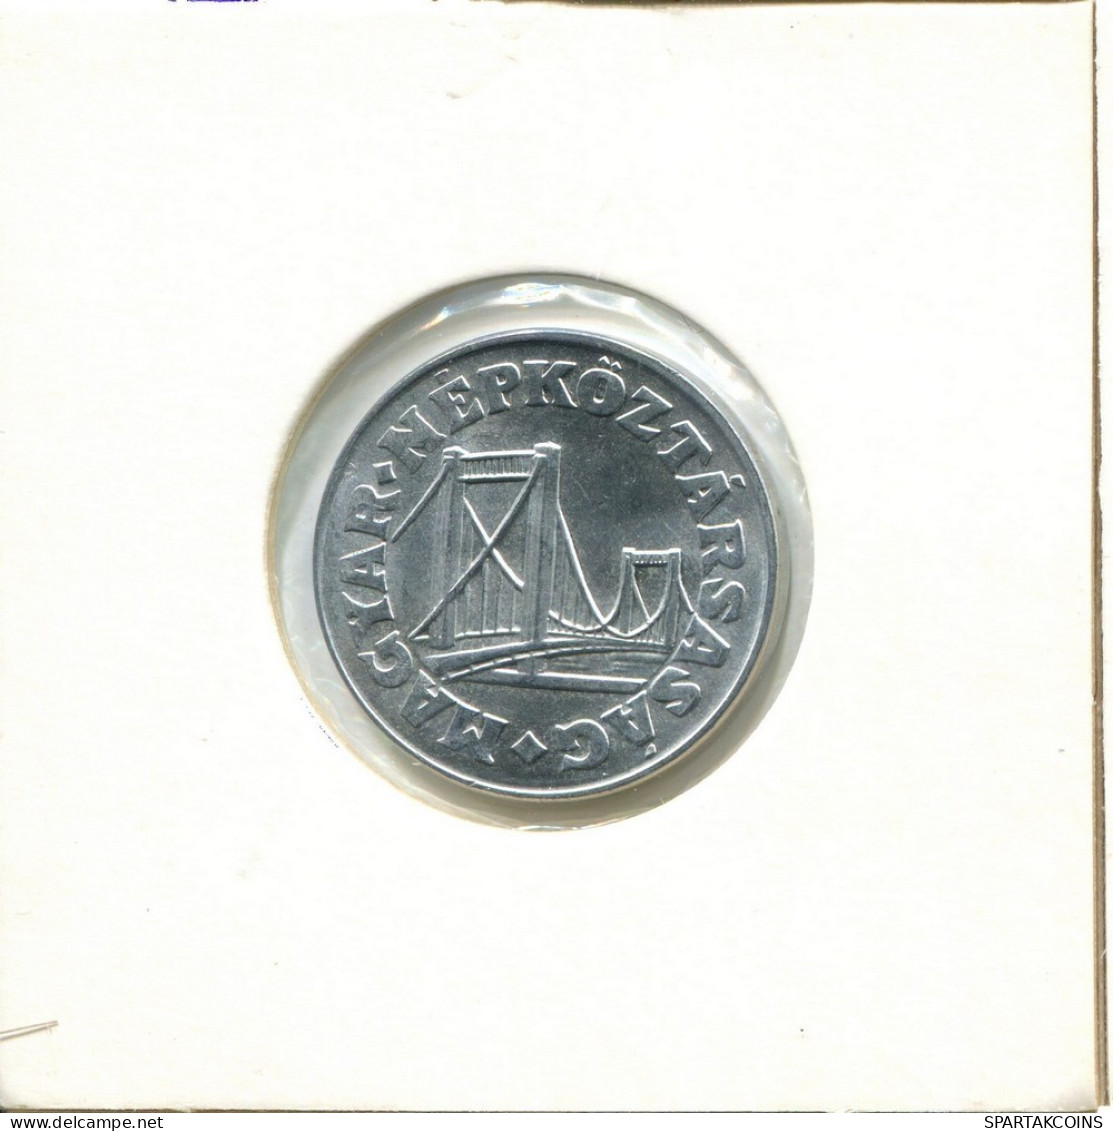 50 FILLER 1989 HUNGARY Coin #AY467.U.A - Hungary